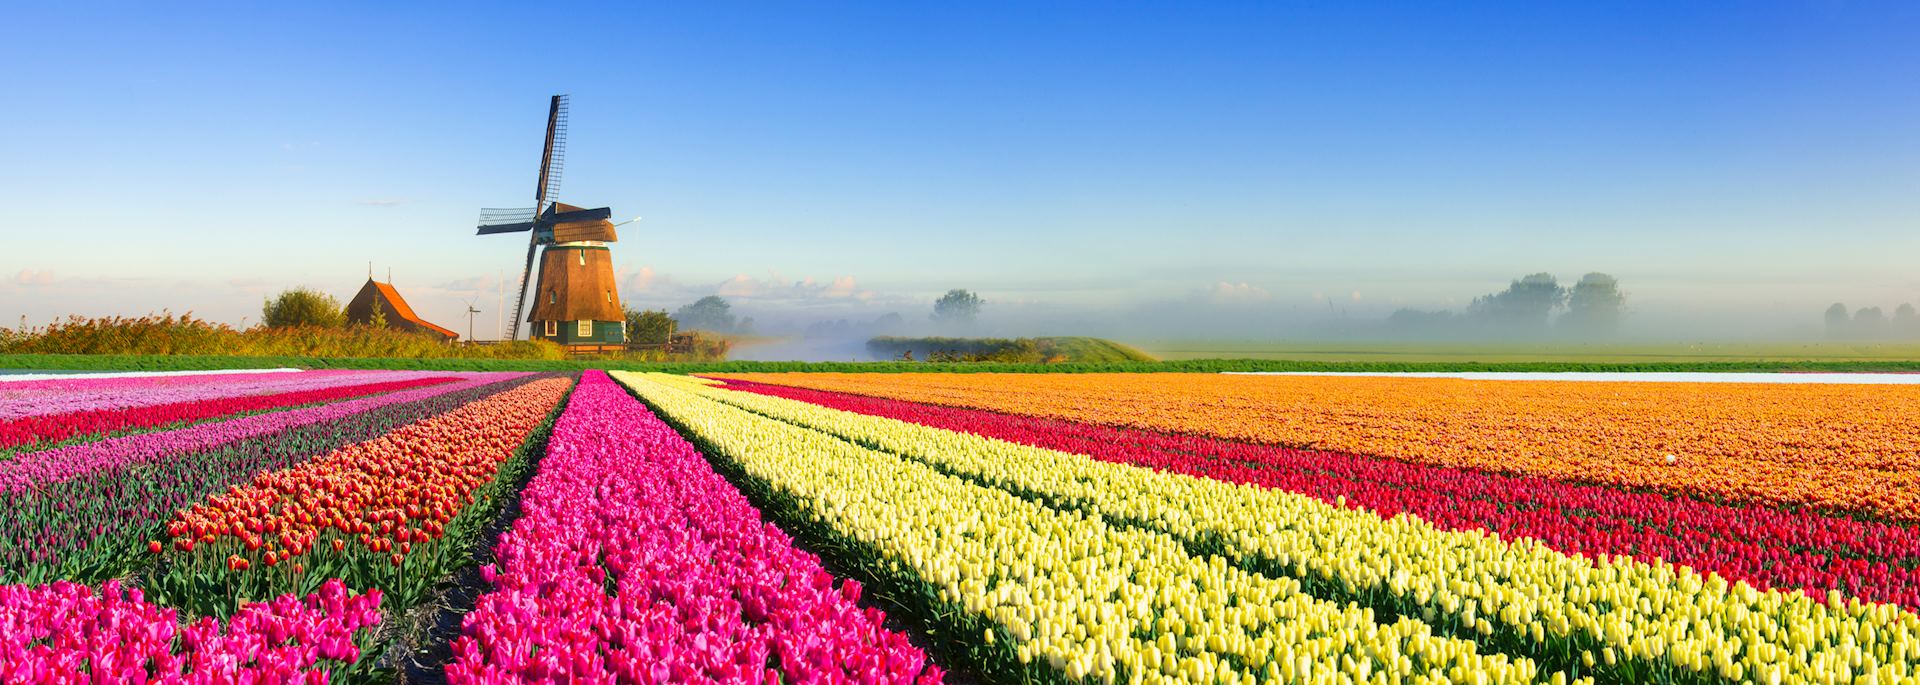 Spring, tulip field, Netherlands